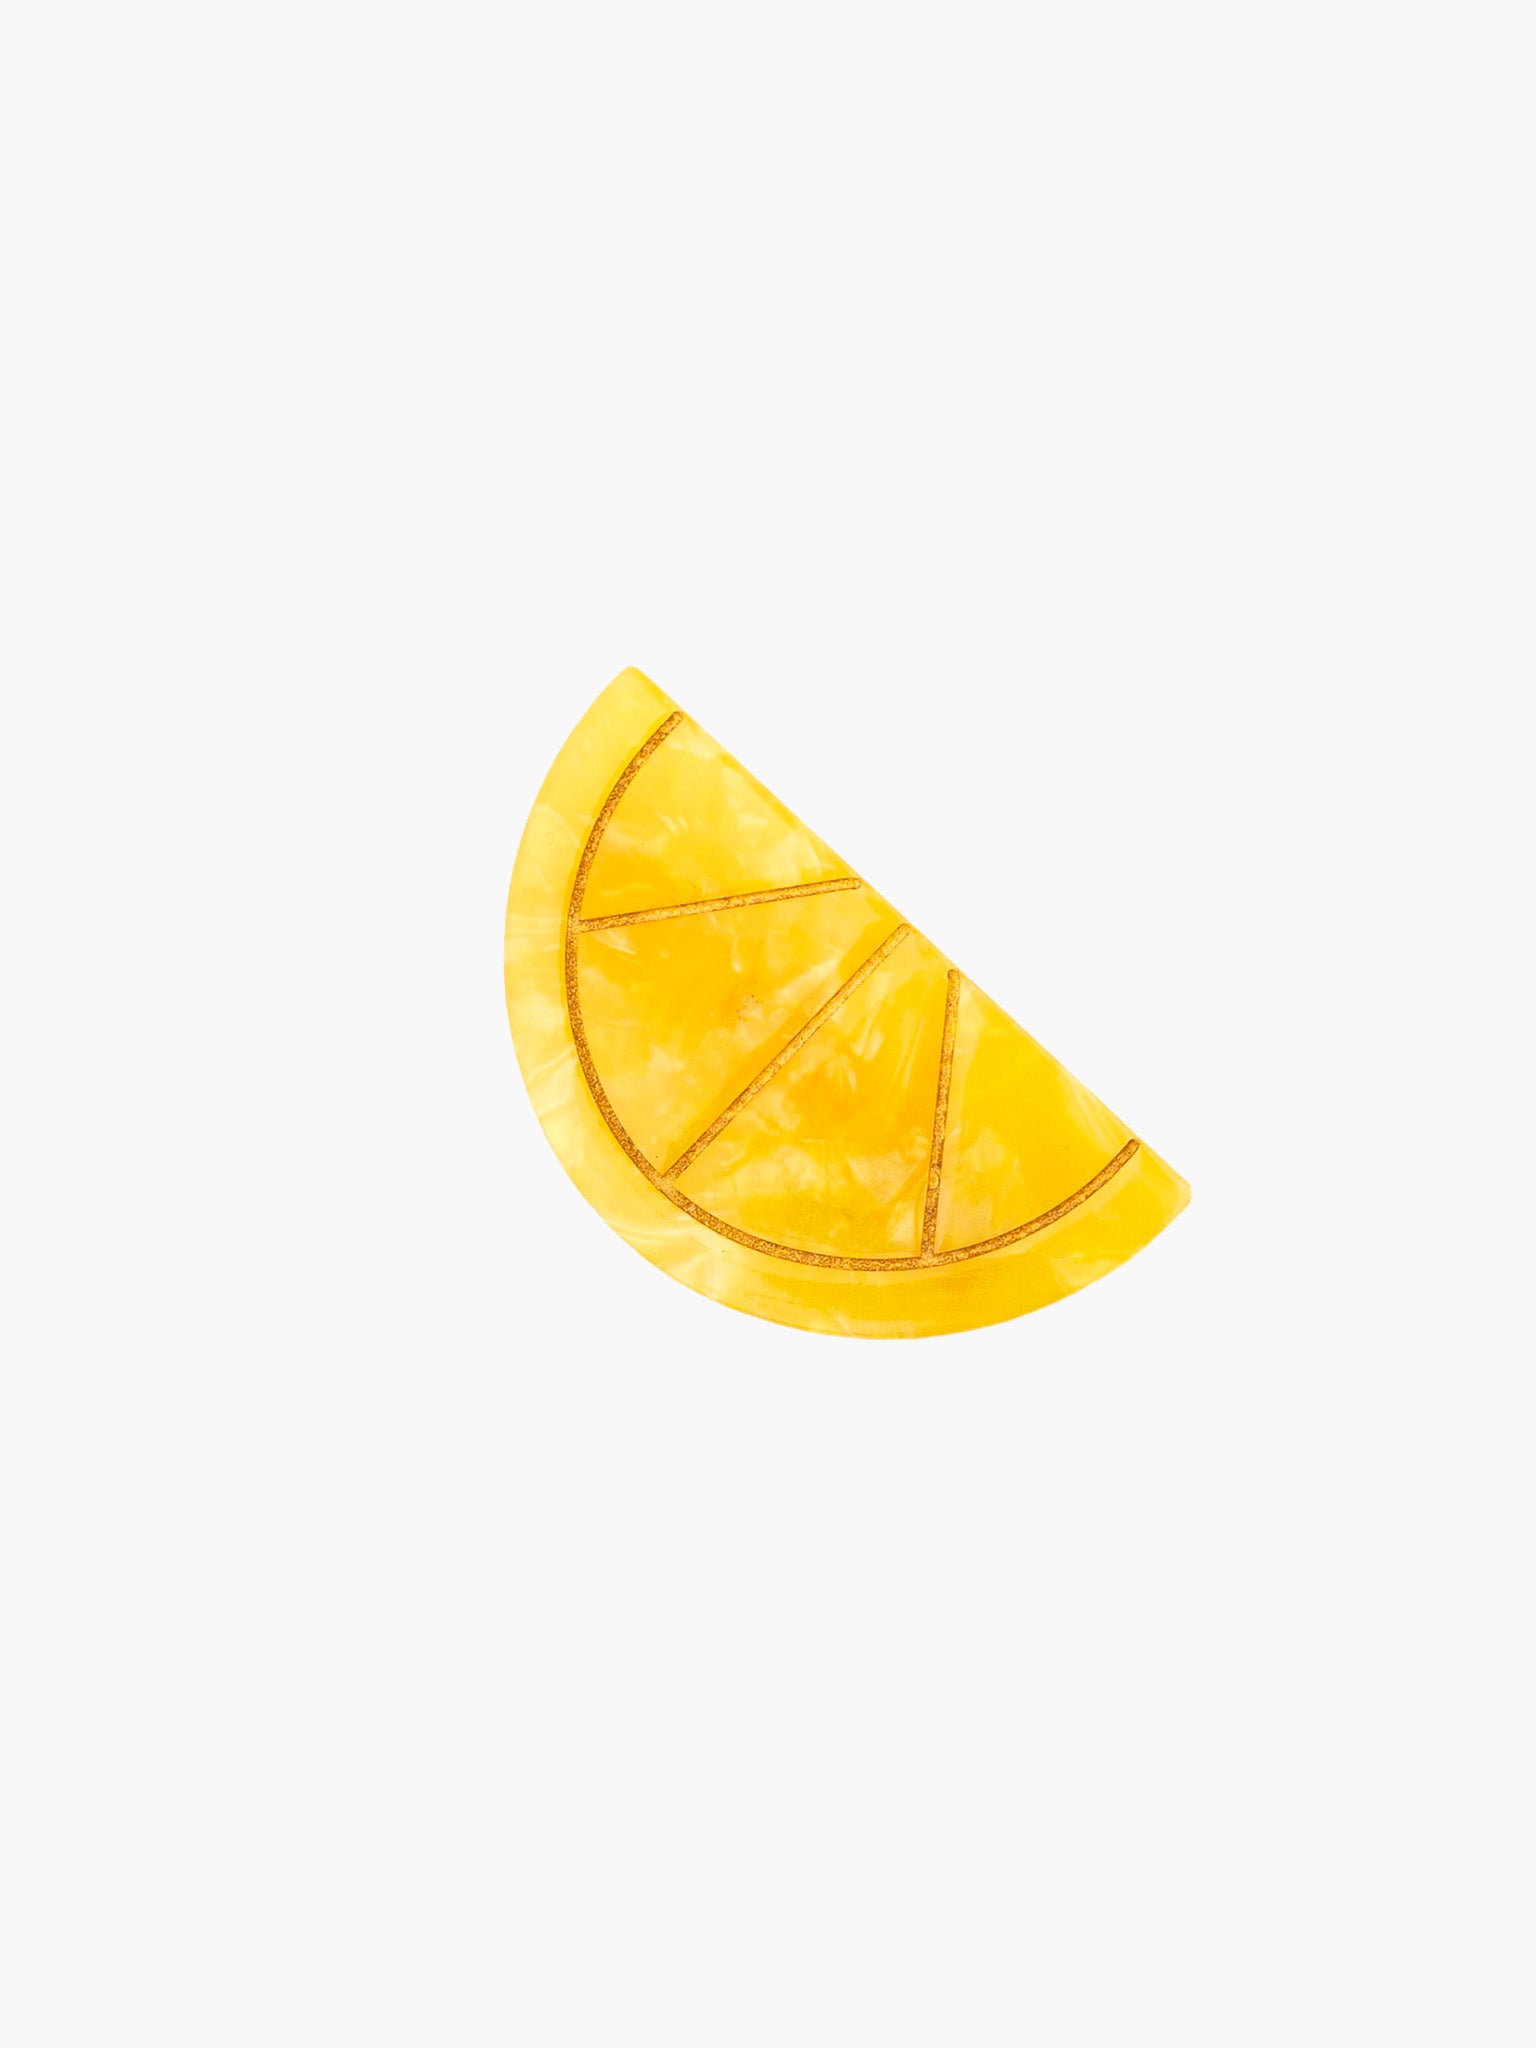 Lemon Hair Clip